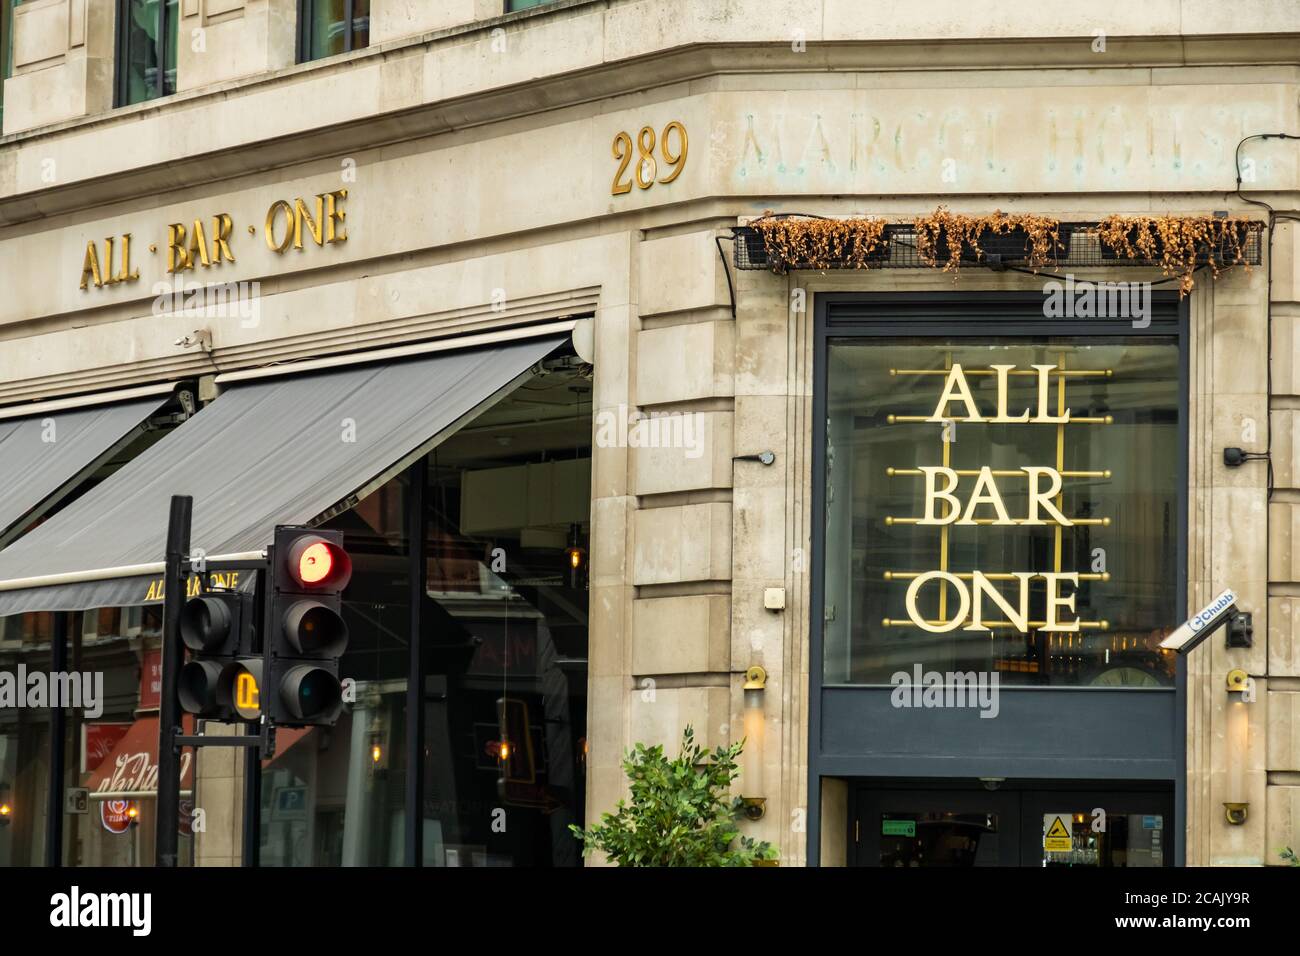 LONDON-All Bar One - catena di pub inglesi che serve birre alla spina e. cibo Foto Stock